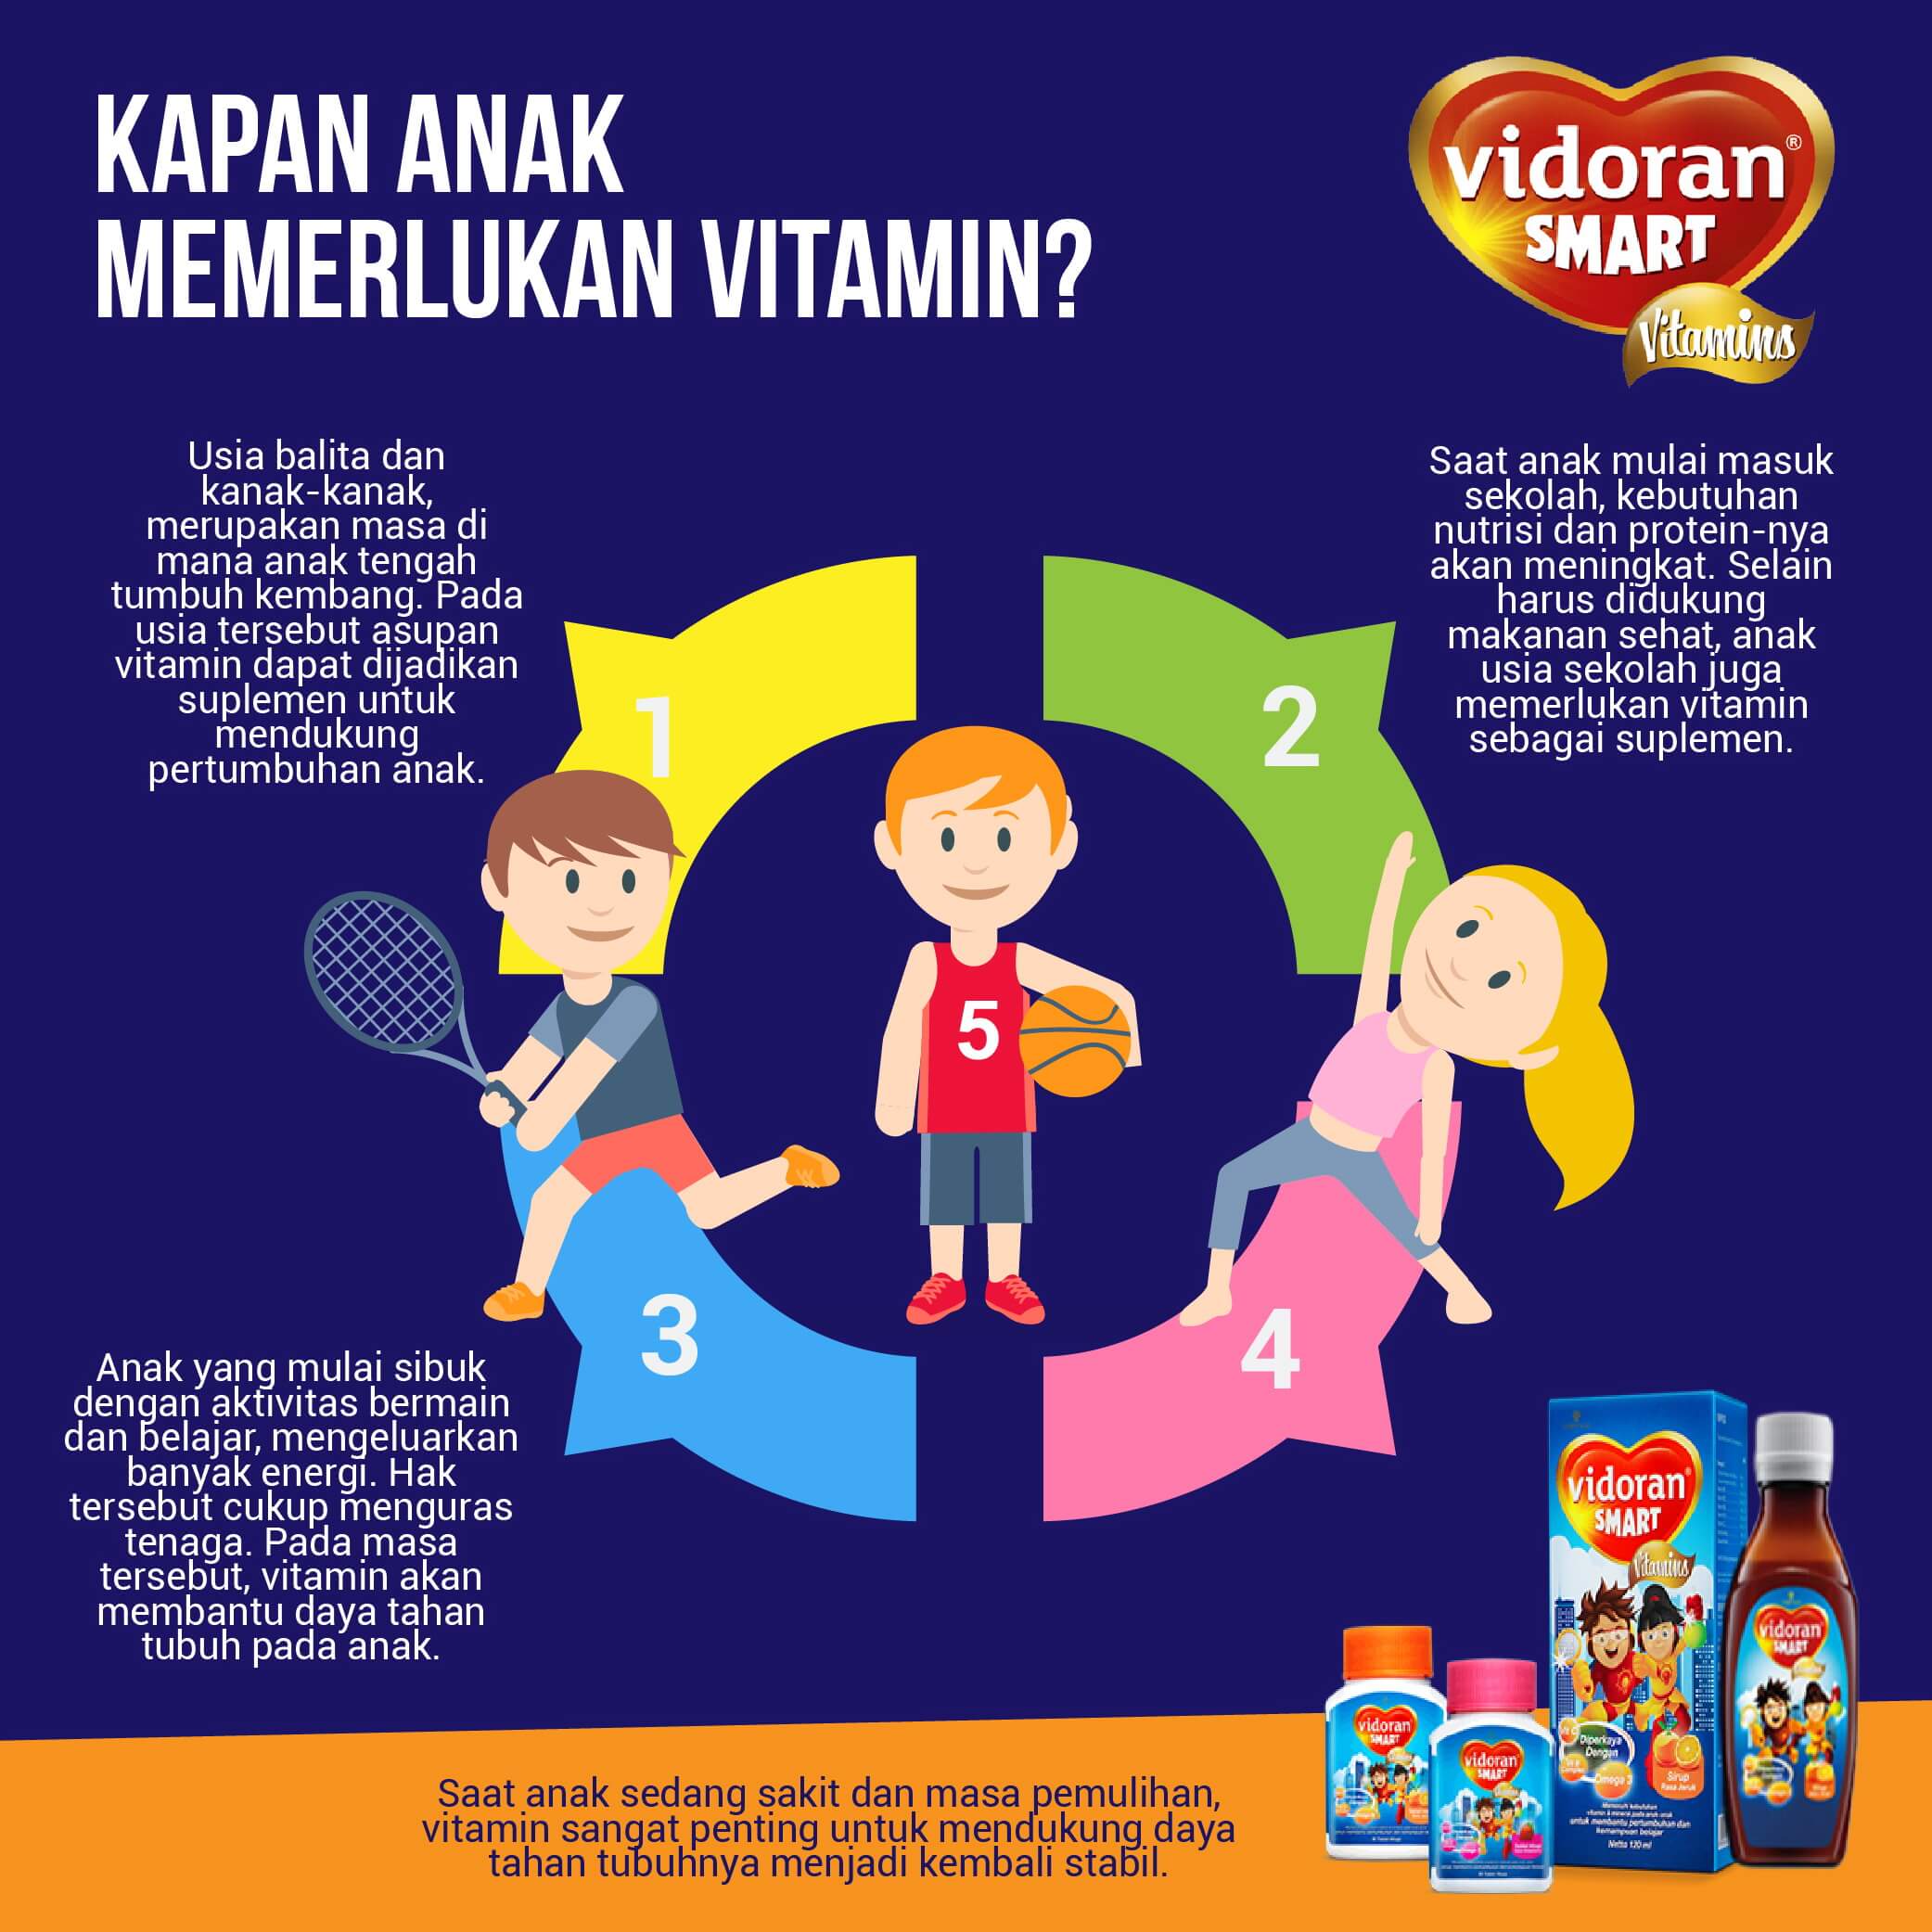 Kapan Anak Memerlukan Vitamin?